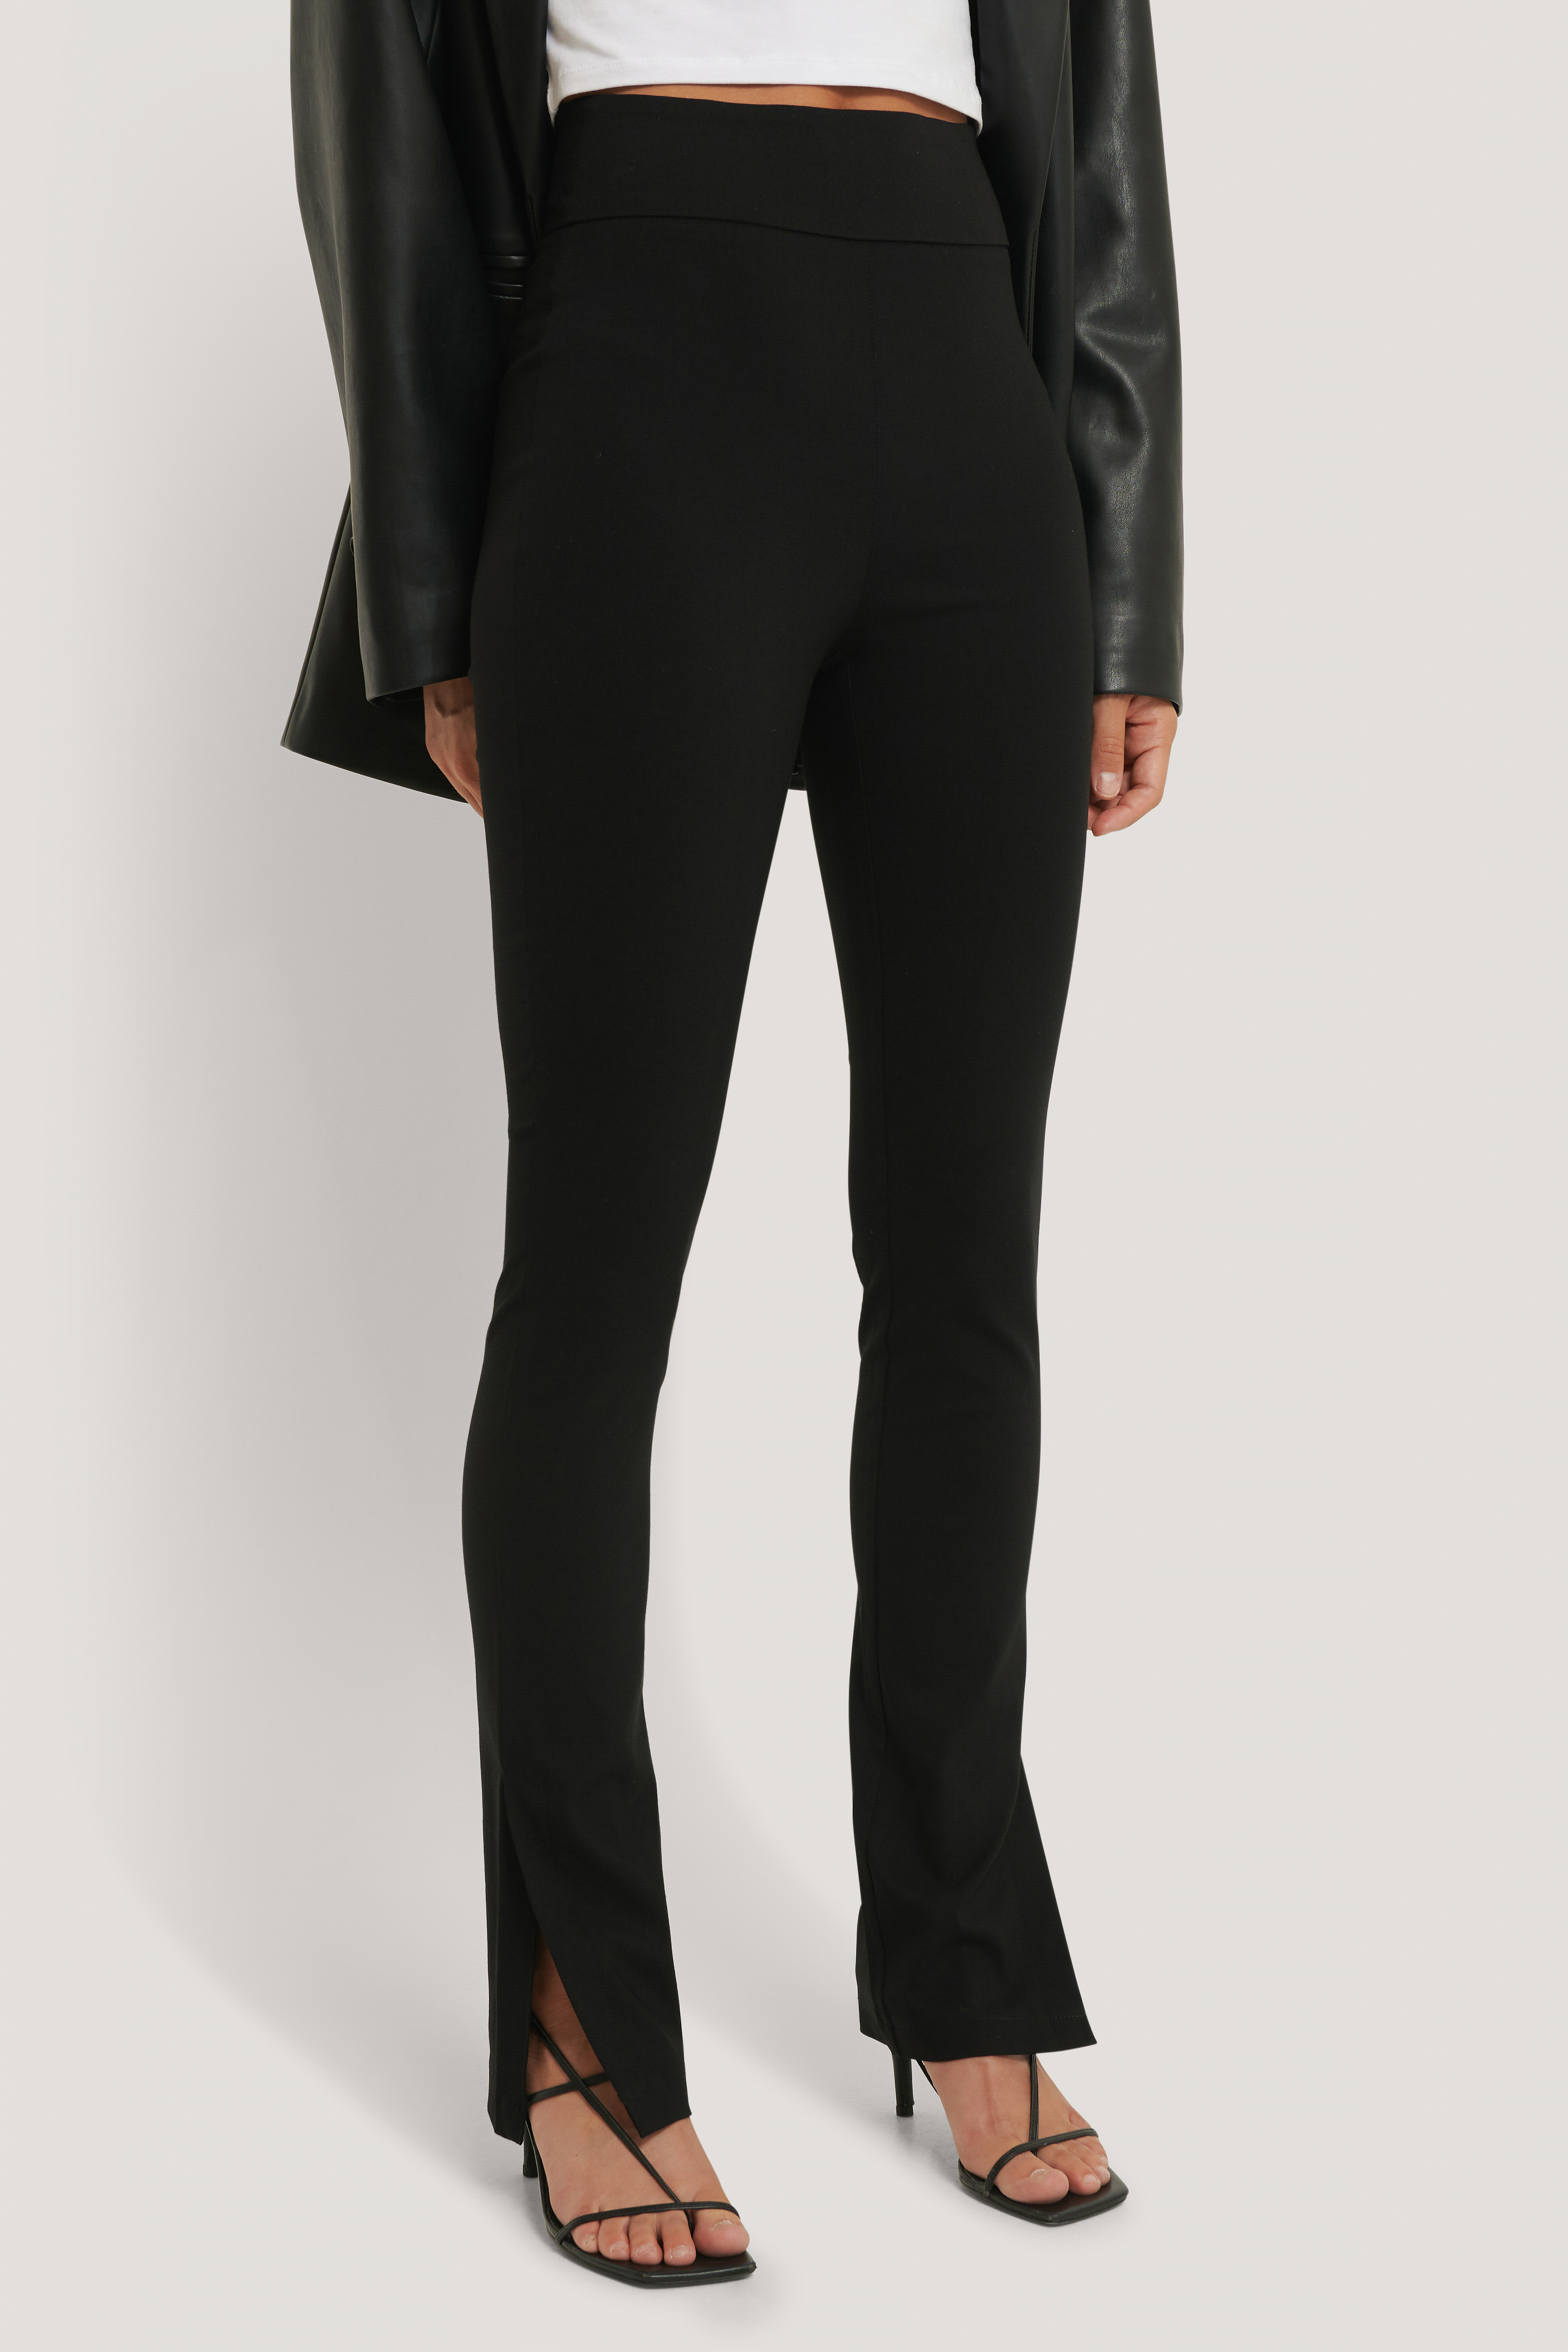 Damen Bekleidung Hosen und Chinos Capri Hosen und cropped Hosen NA-KD Synthetik Trend Schmal geschnittene Super Stretch Hose in Braun 